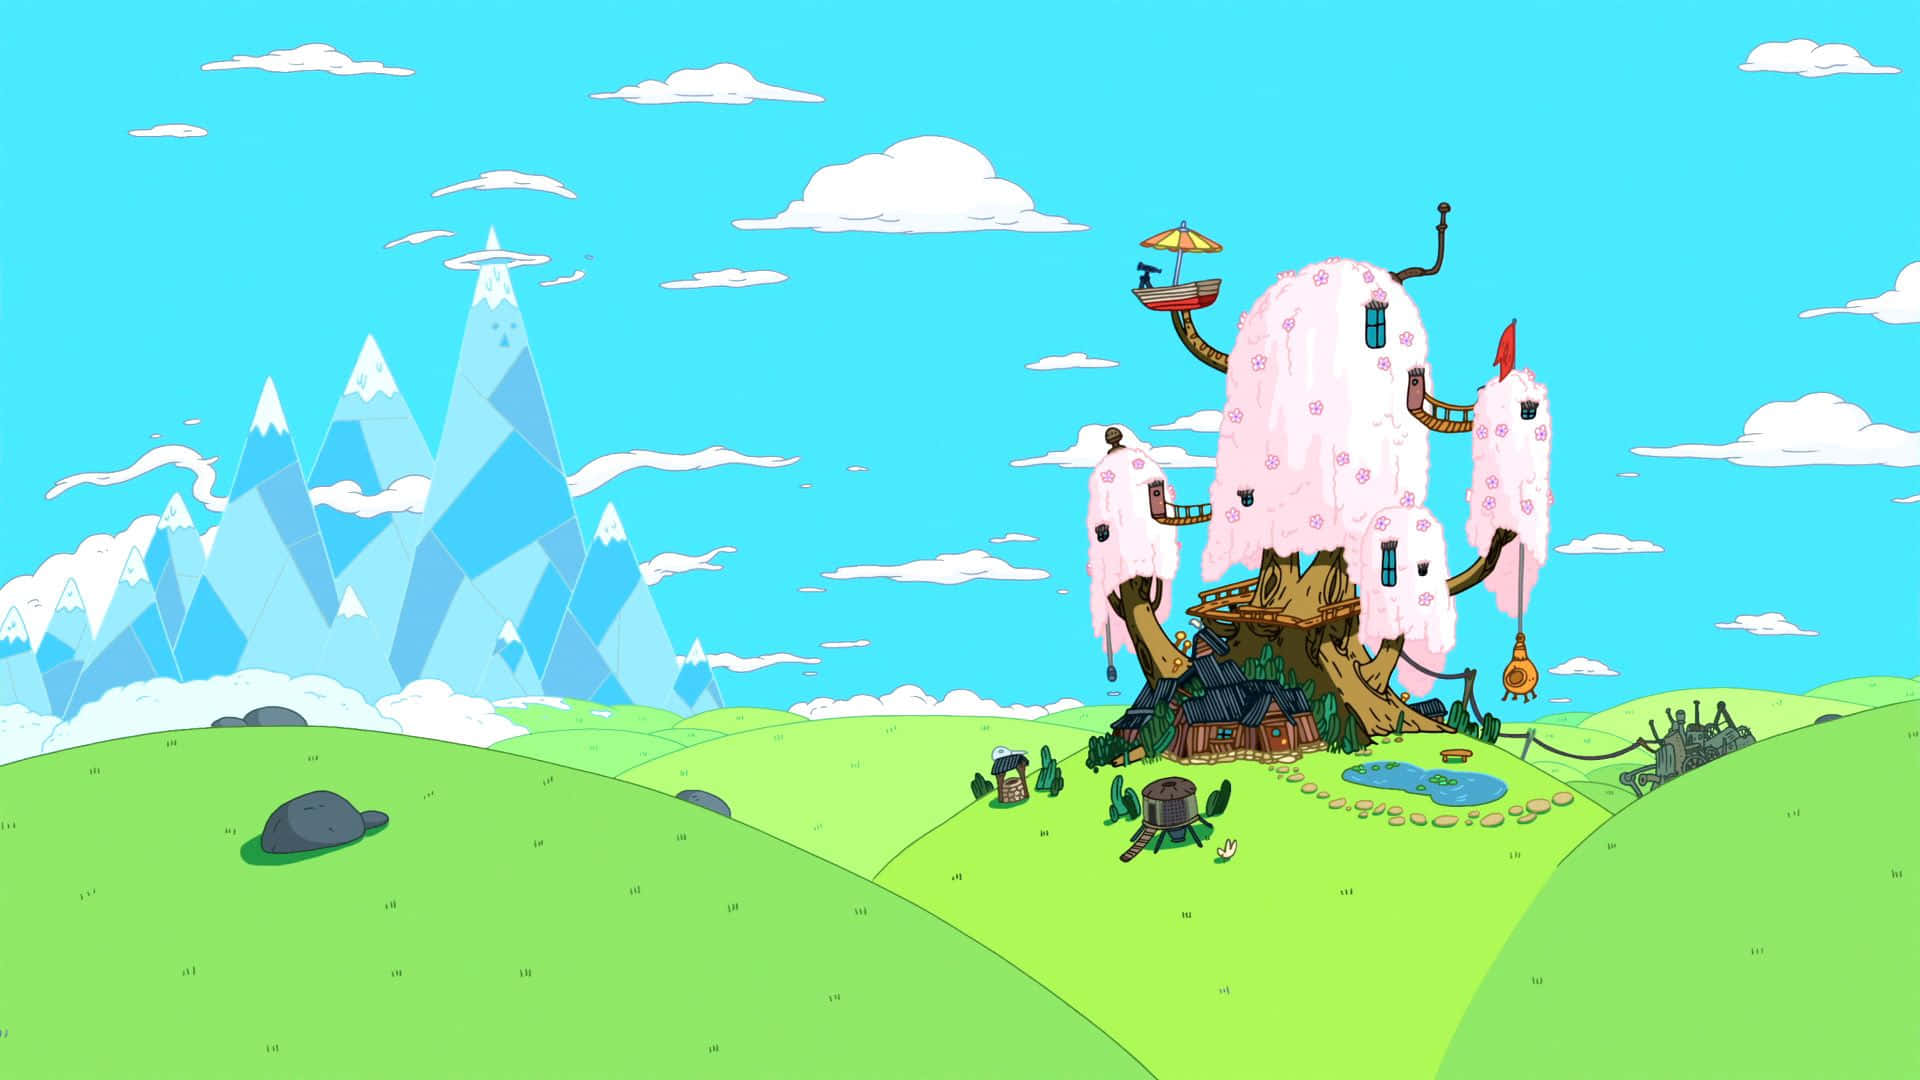 Enoverklig Landskap Full Av Äventyr I Adventure Time-världen. Wallpaper